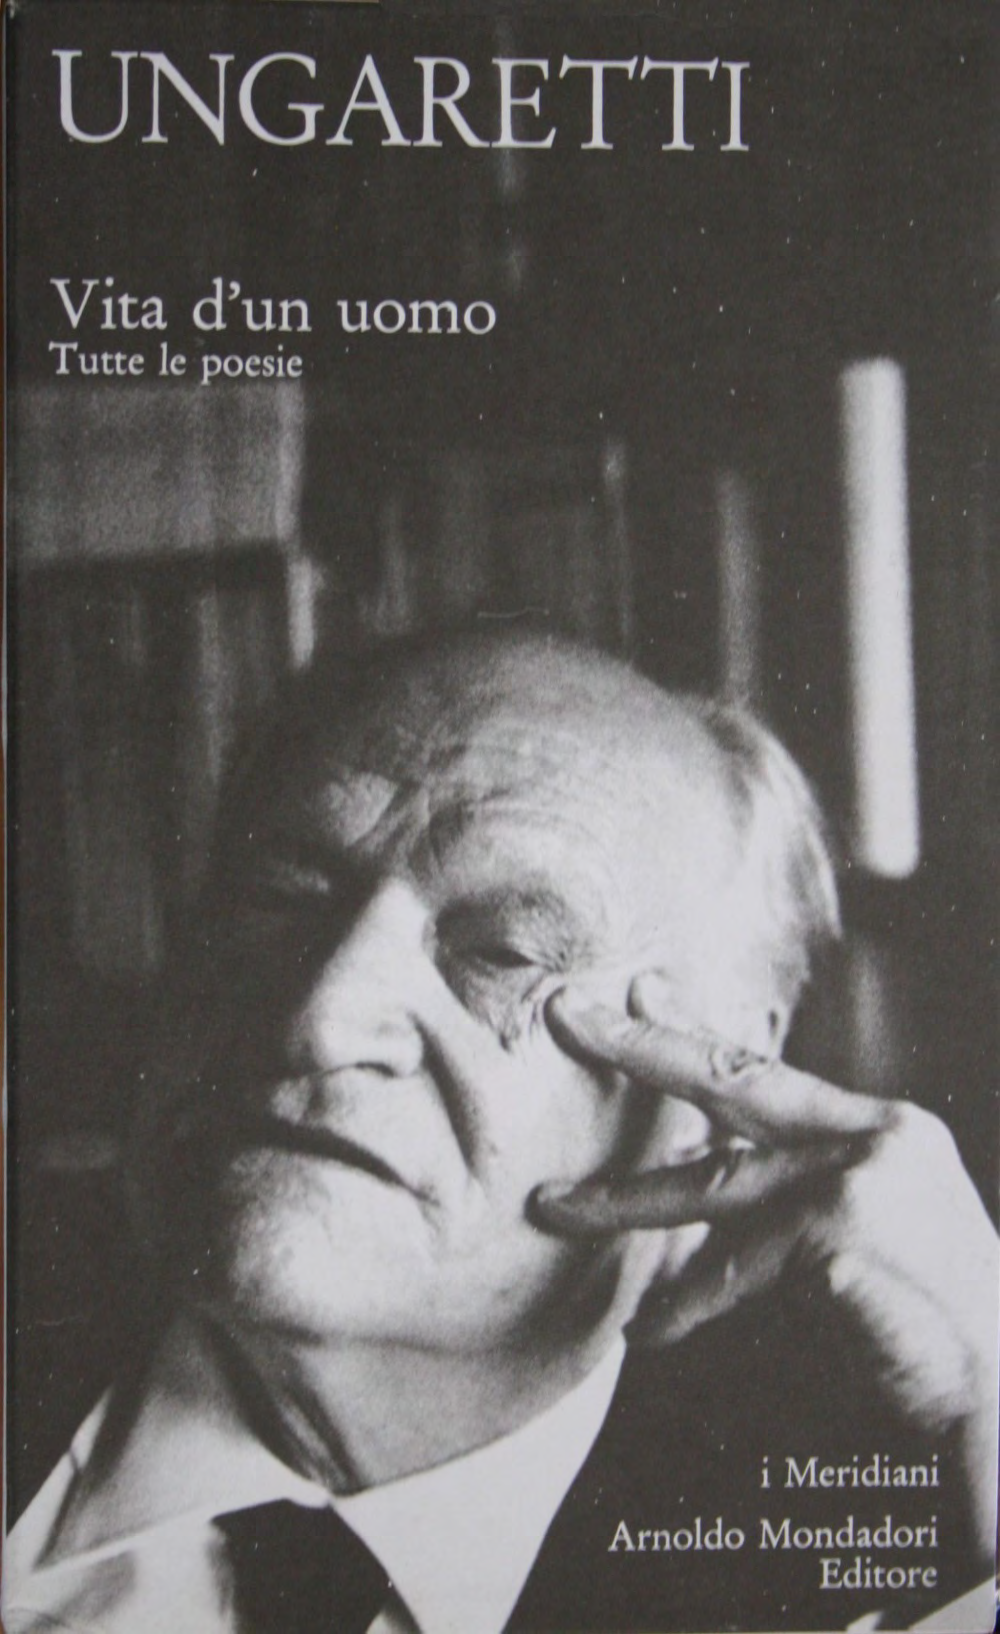 VITA D UN UOMO Nel 1969, anno che precede quello della morte di Ungaretti, Mondadori pubblica in volume unitario la Vita d un uomo, che raccoglie la produzione in versi ungarettiana all interno di